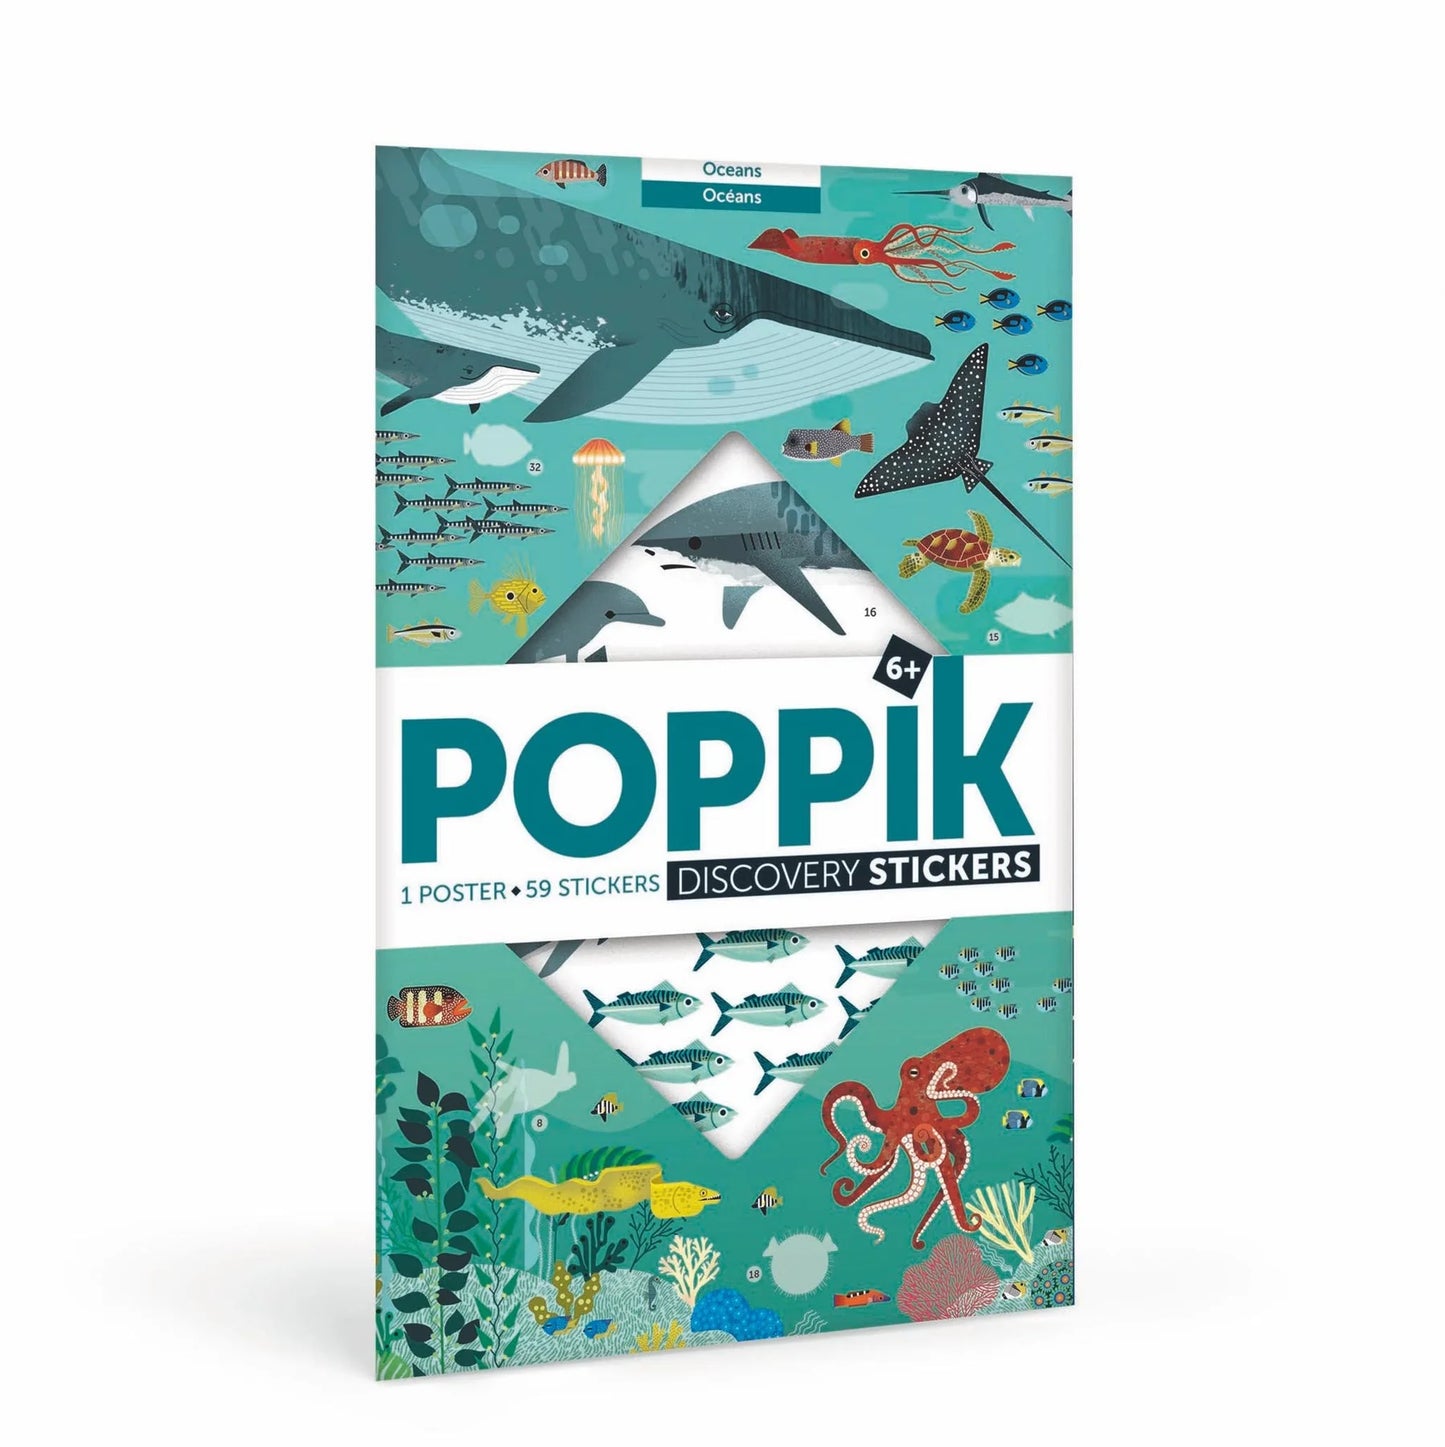 Collection de Posters educatifs aec autocollants repositionnables - Poppik